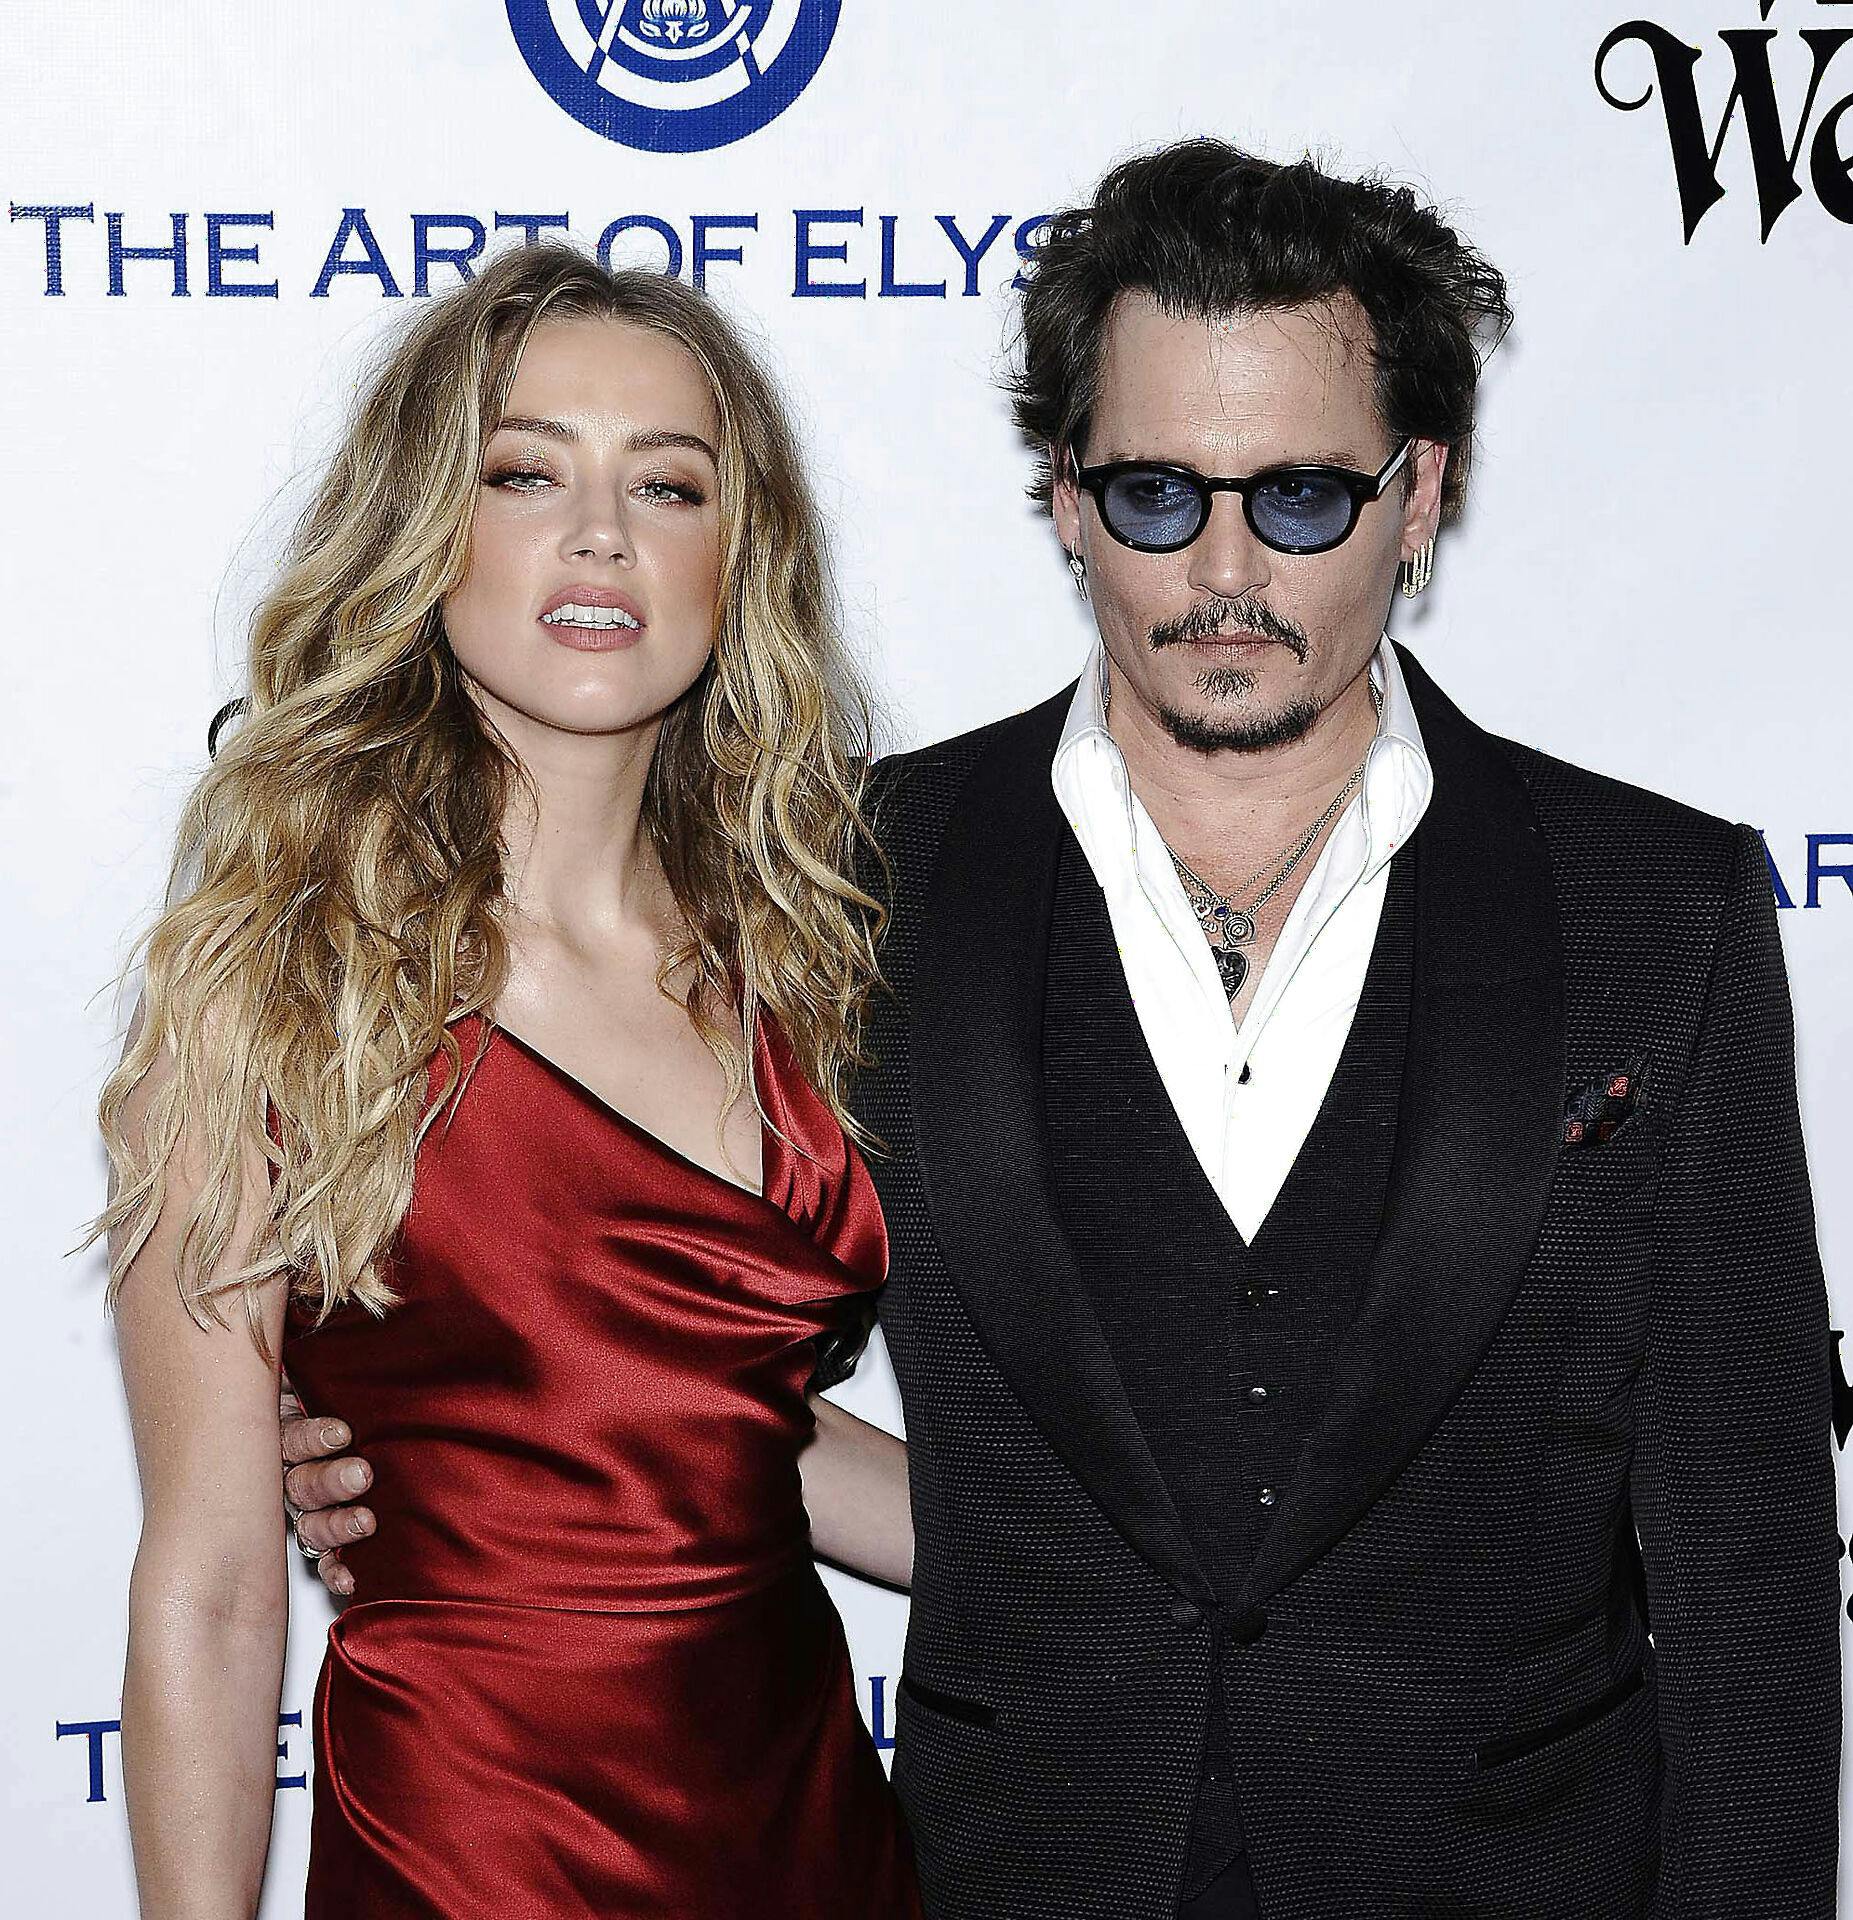 Amber Heard og Johnny Depp blev skilt i 2017 efter ikke engang to års ægteskab.
